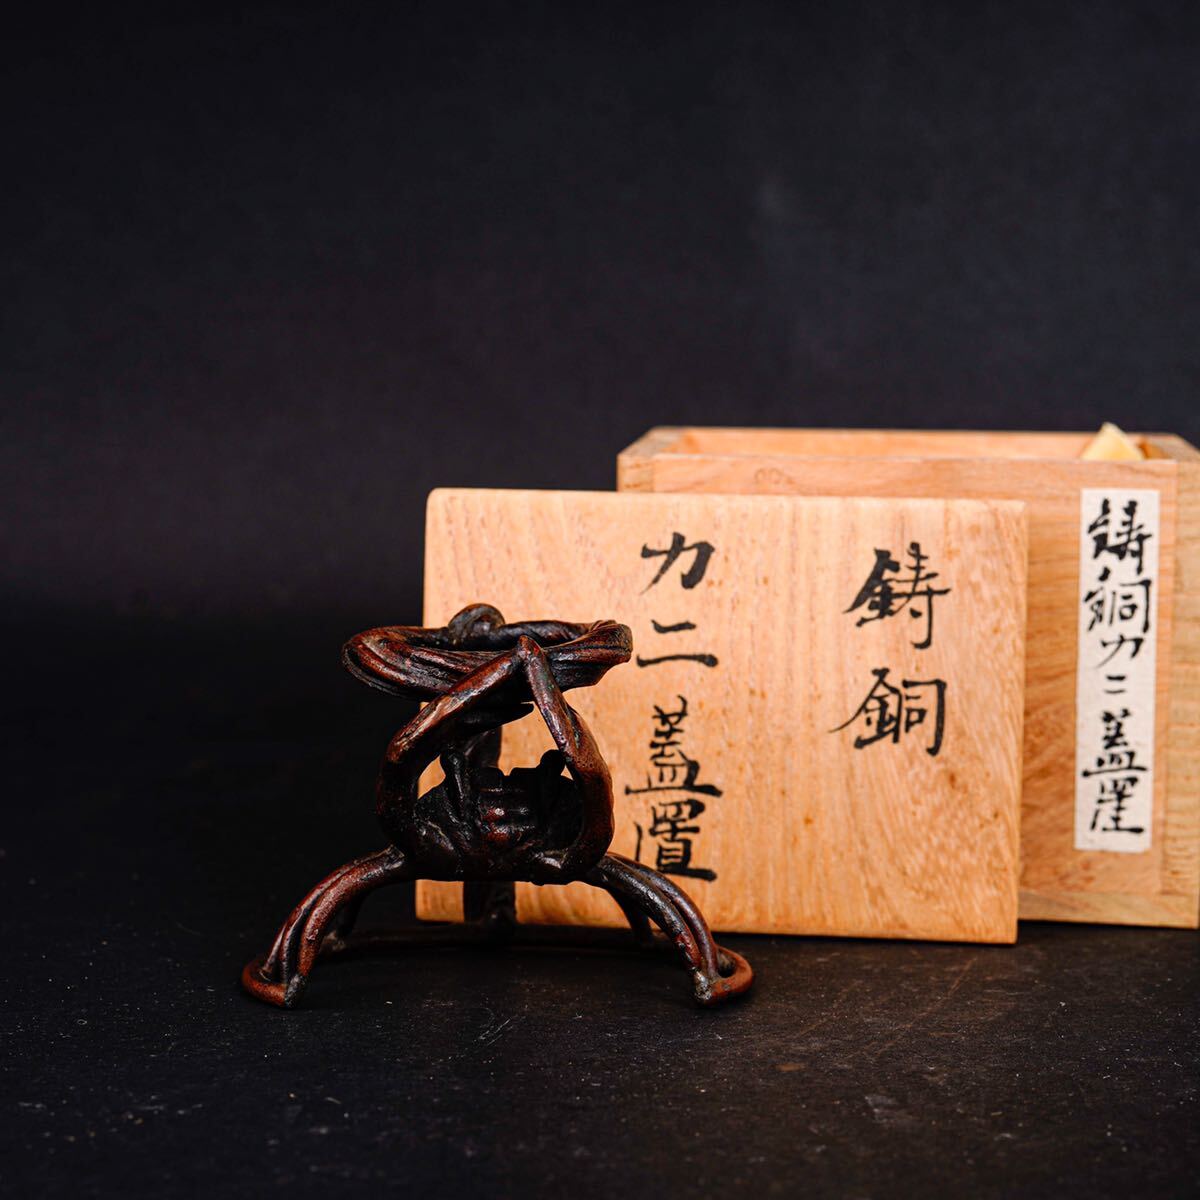 【後】HJ018 名古屋茶道具コレクション大放出 鋳銅カニ蓋置 茶道具專場 古美術 骨董品 古玩 時代物 古道具 中国美術品 日本美術品の画像1